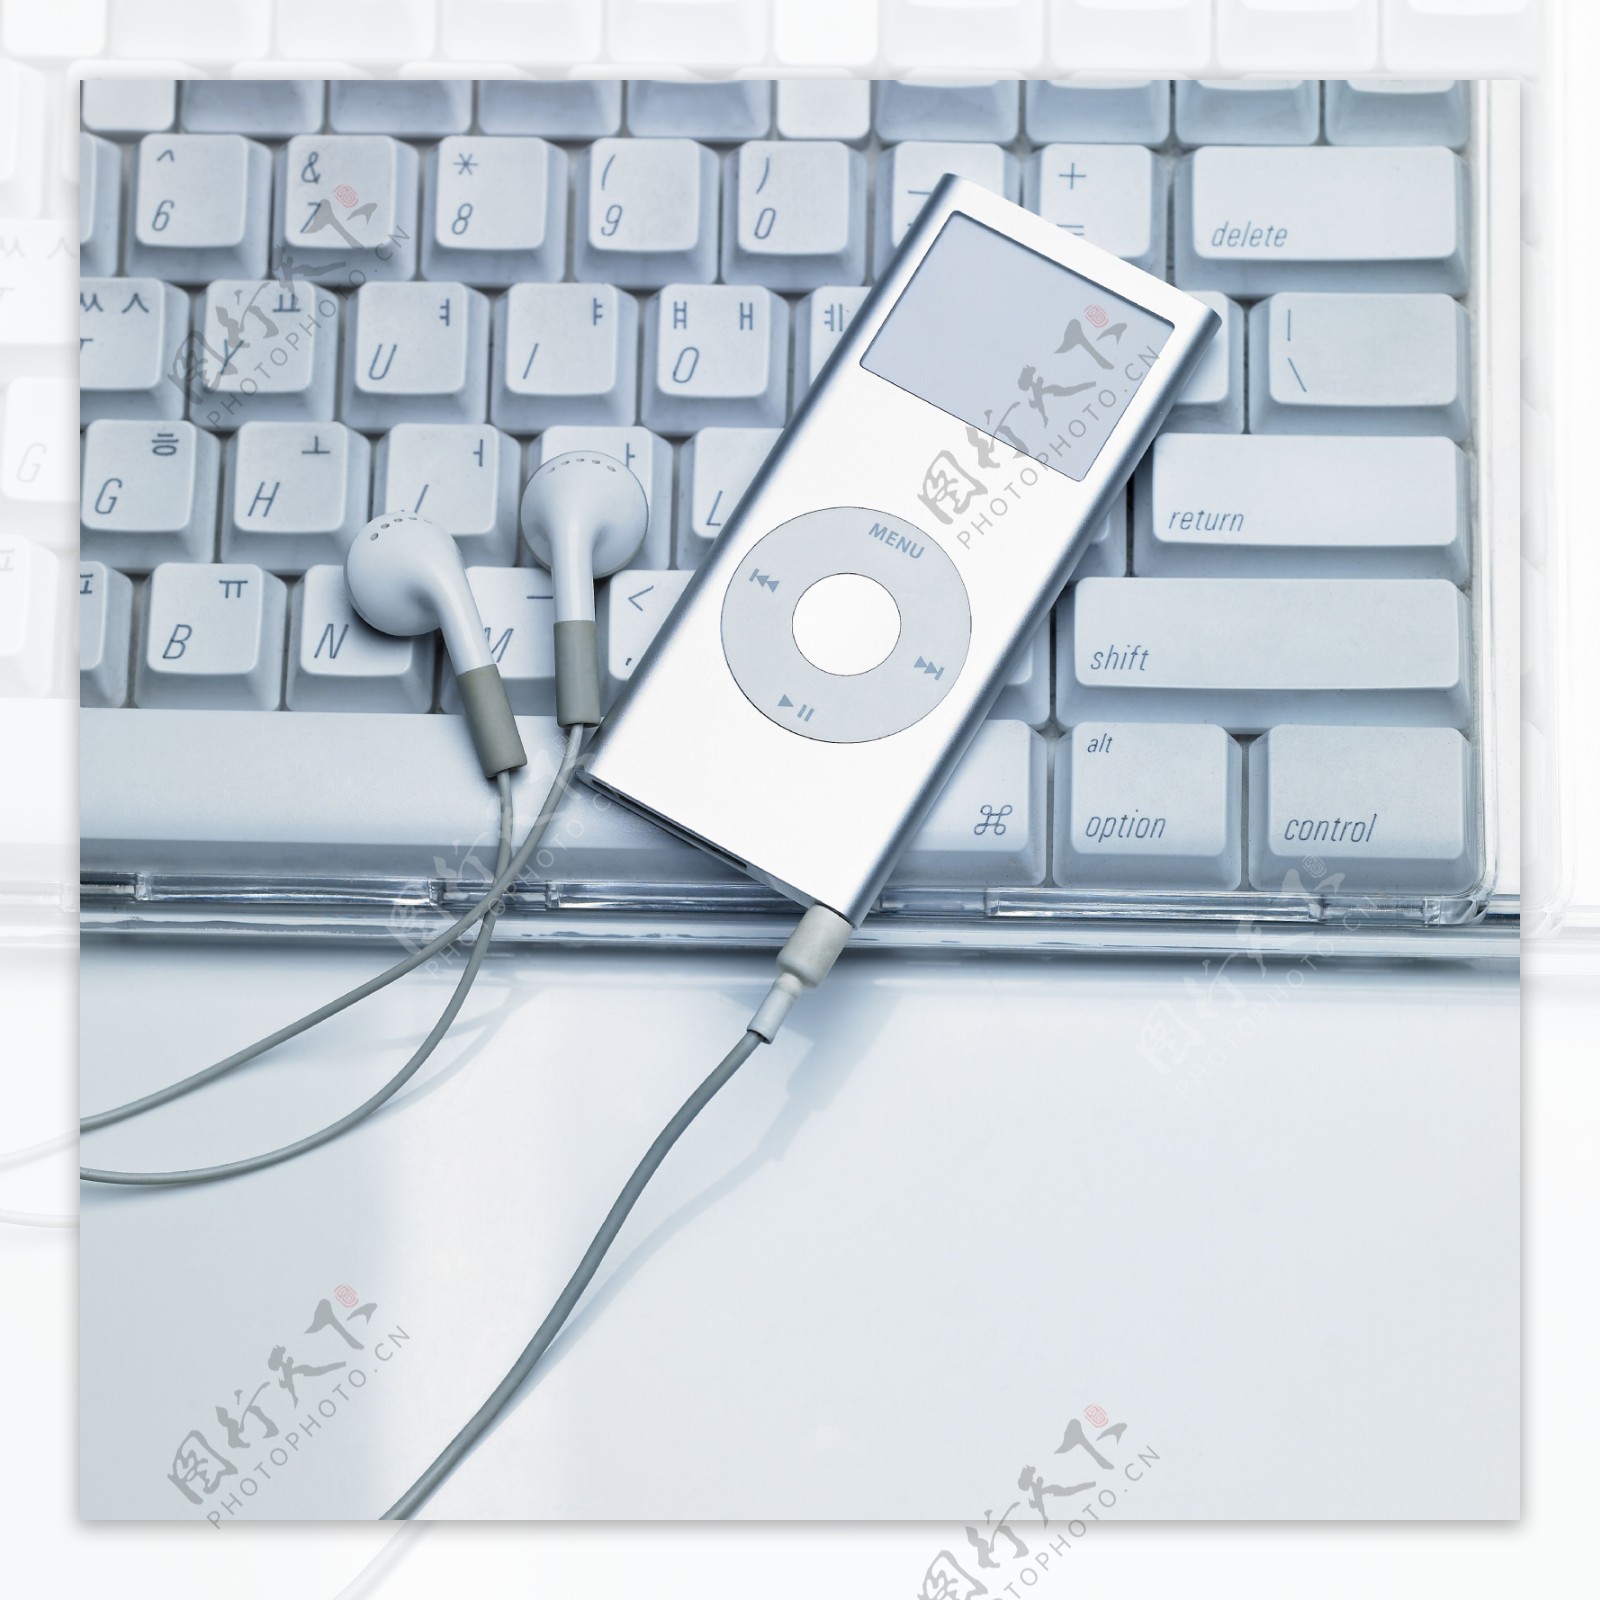 MP3音乐播放器图片